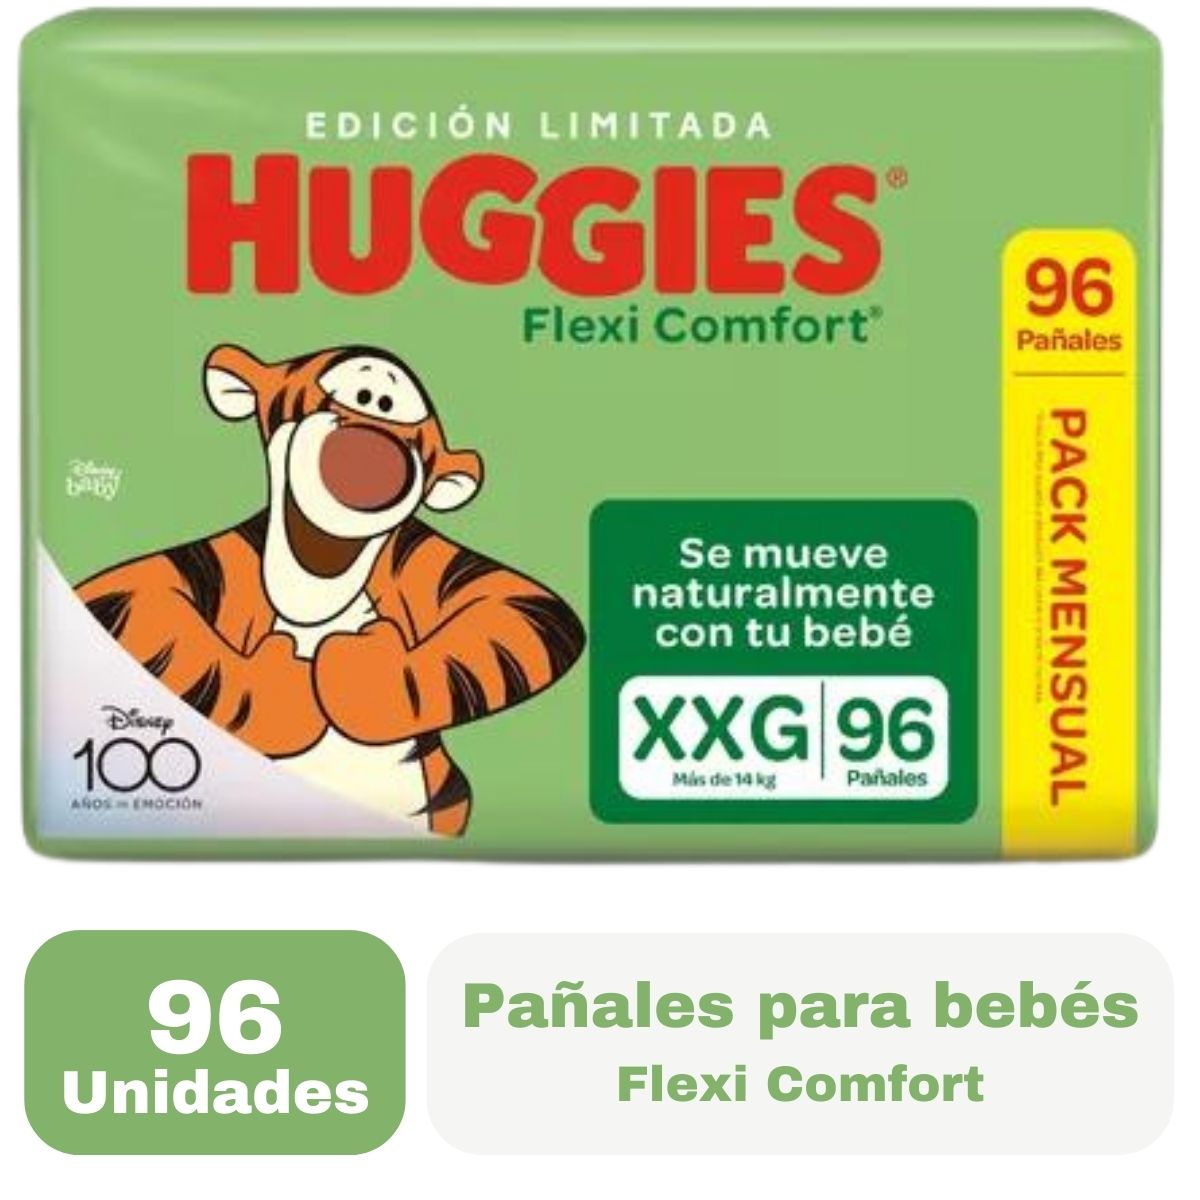 Miniatura 1 de 2 de Pañales Huggies Flexi Comfort Pack Mensual Extra Flex XXG x 96 unidades